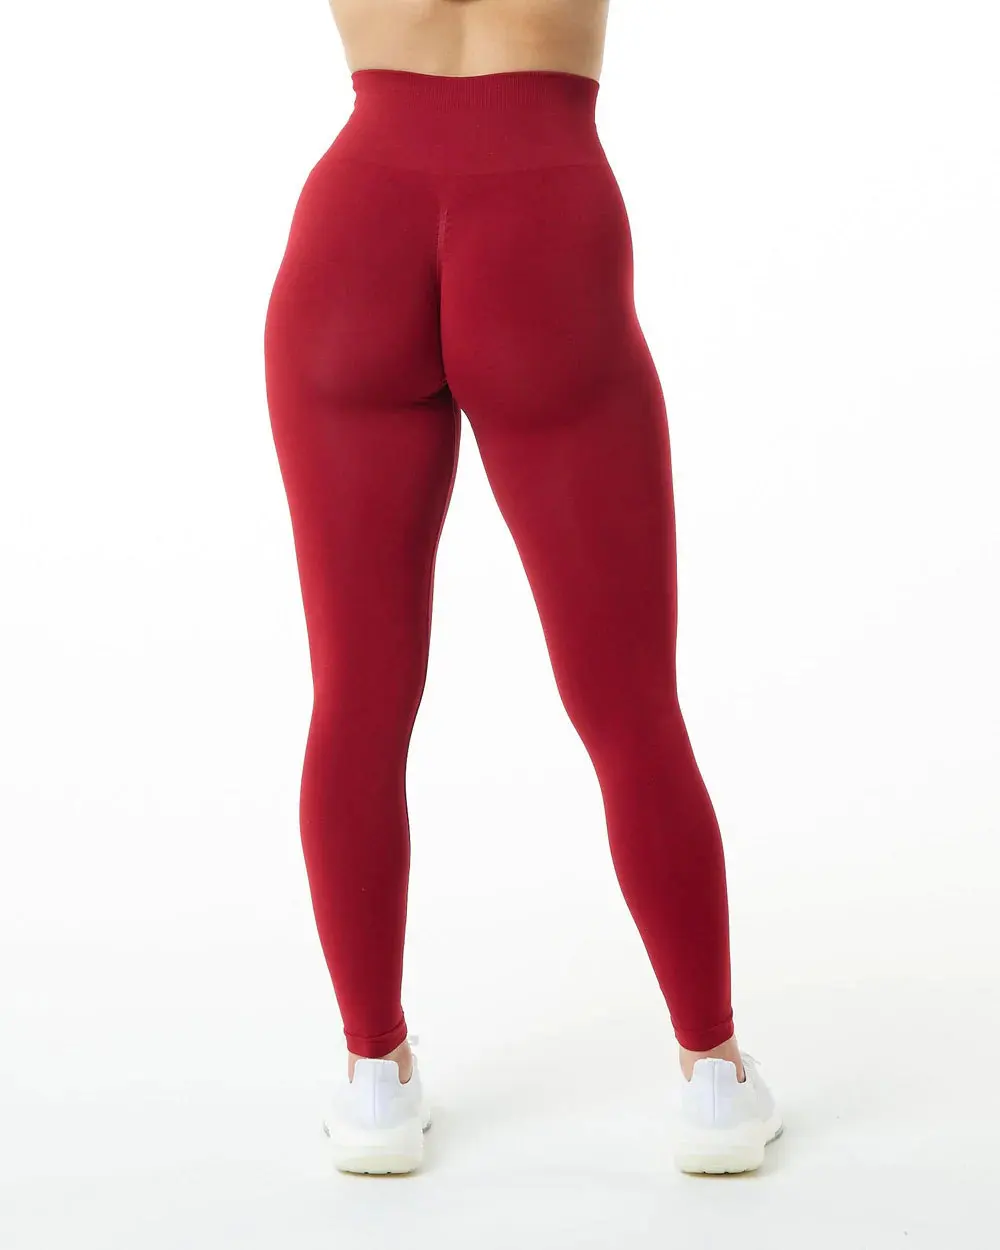 13 Colors Scrunch Butt Leggings For Women Workout Yoga Pants High Waist ...